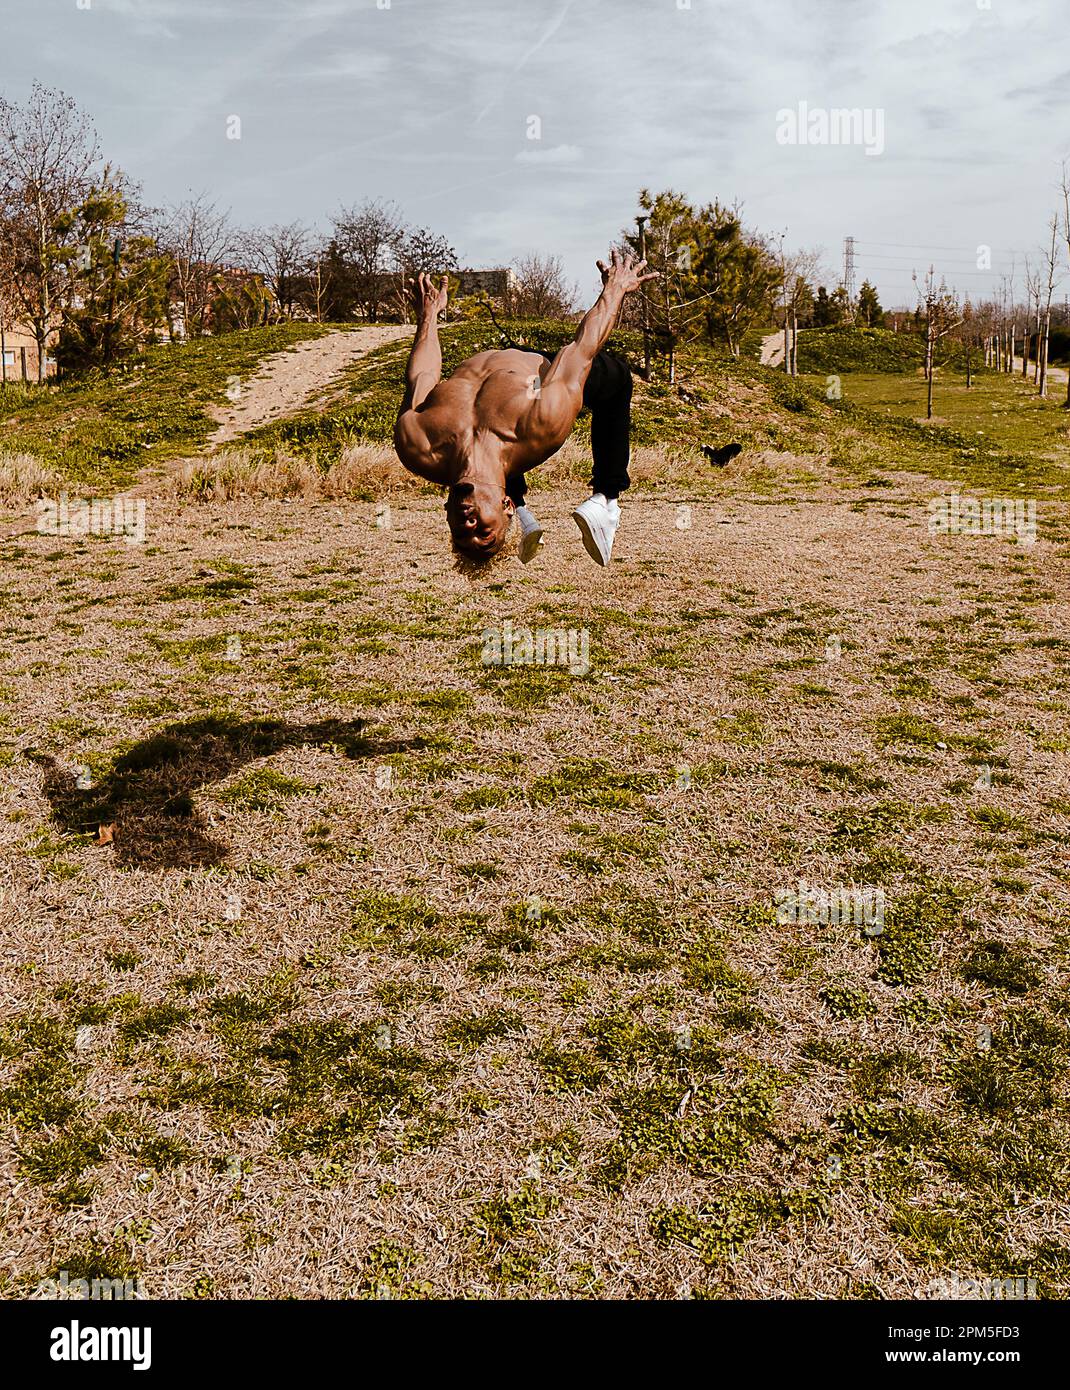 Stock Photo eines Mannes, der auf dem Feld gegen den klaren Himmel einen Salto macht Stockfoto